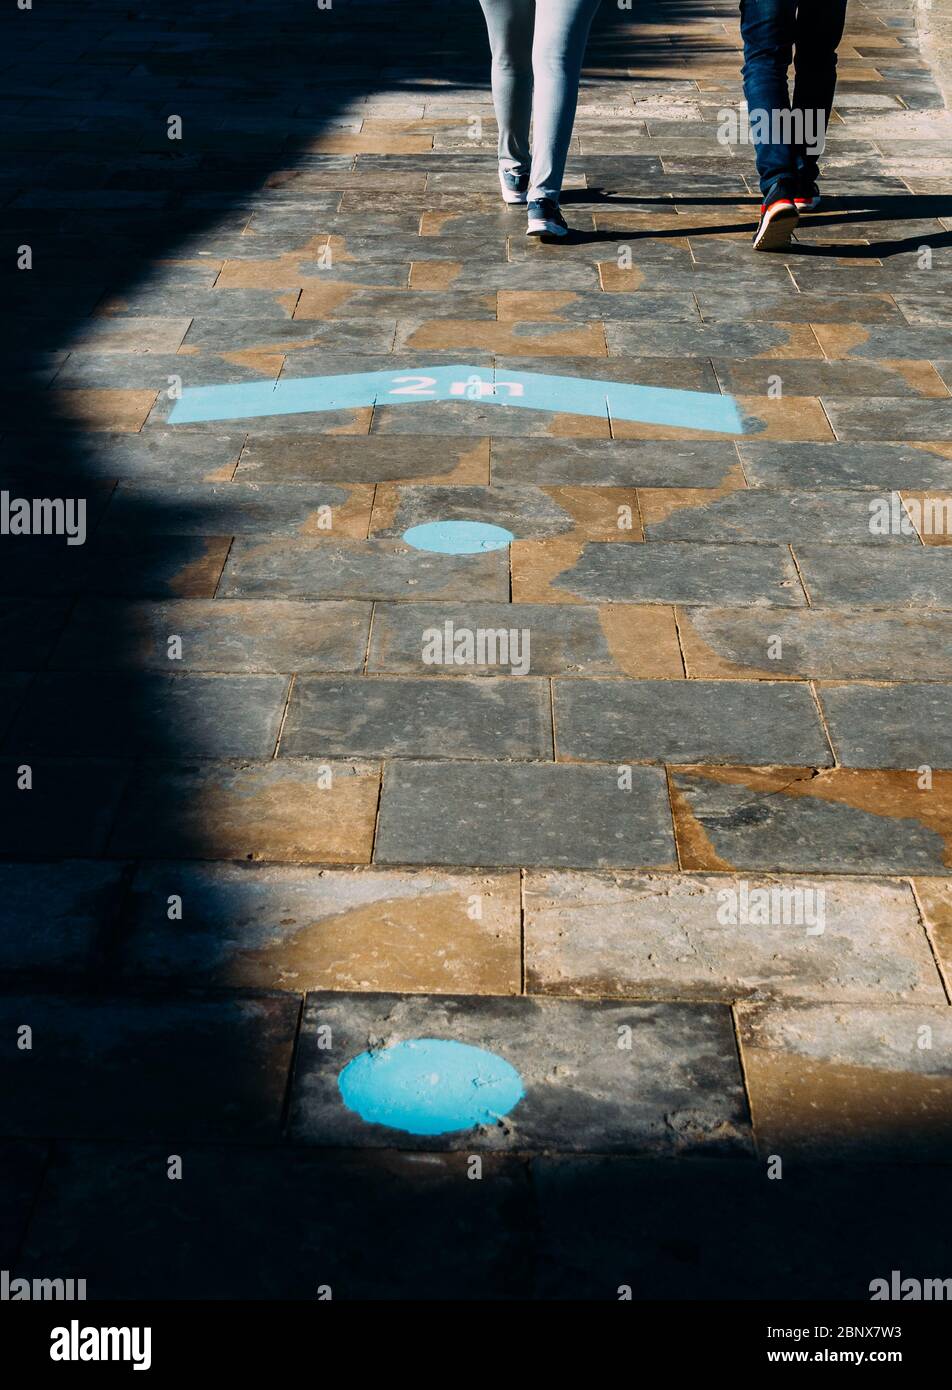 Fußabdruck-Zeichen blaue Farbe mit Text Halten Sie Ihre Entfernung mindestens zwei Meter - soziale Distanz während Coronavirus Ausbruch Stockfoto